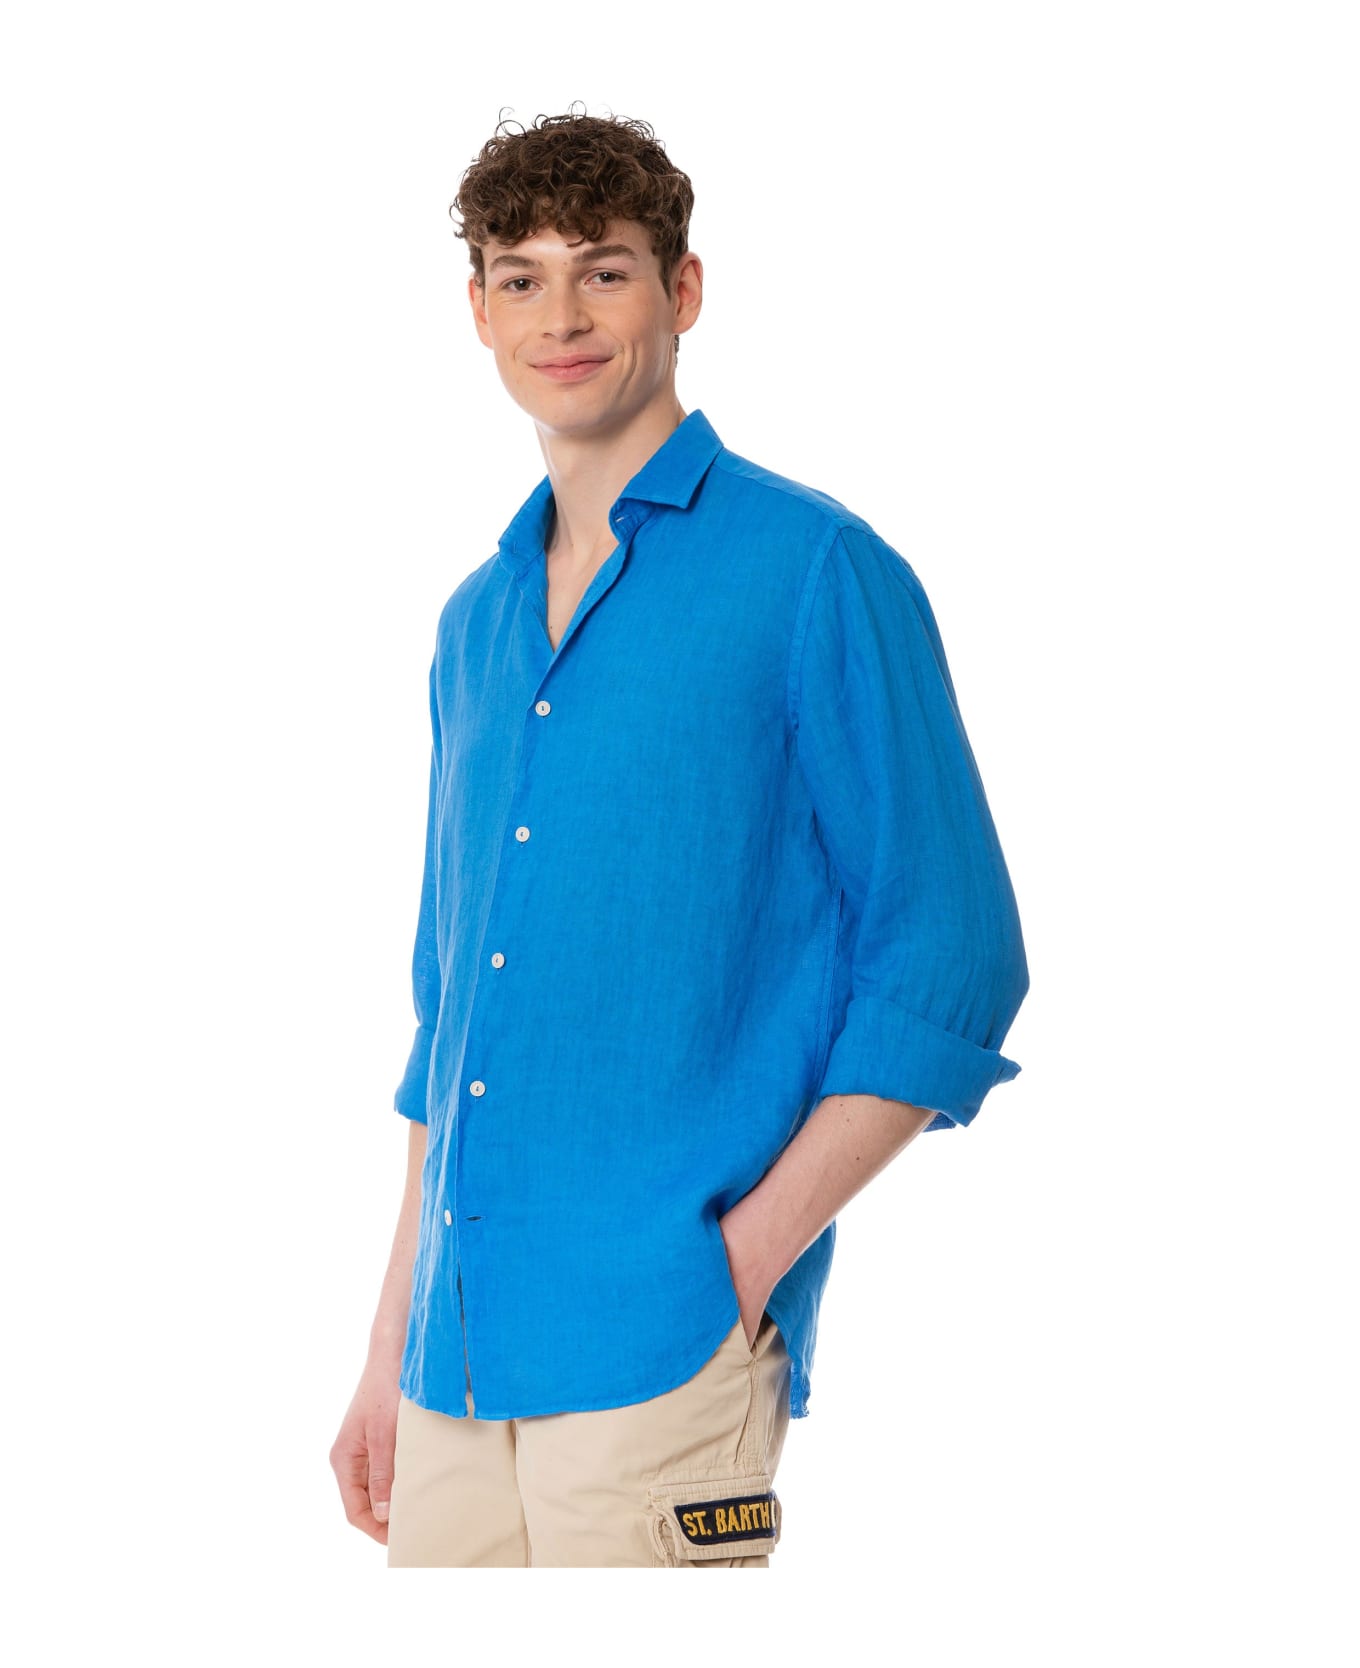 MC2 Saint Barth Man Bluette Linen Pamplona Shirt - BLUE シャツ